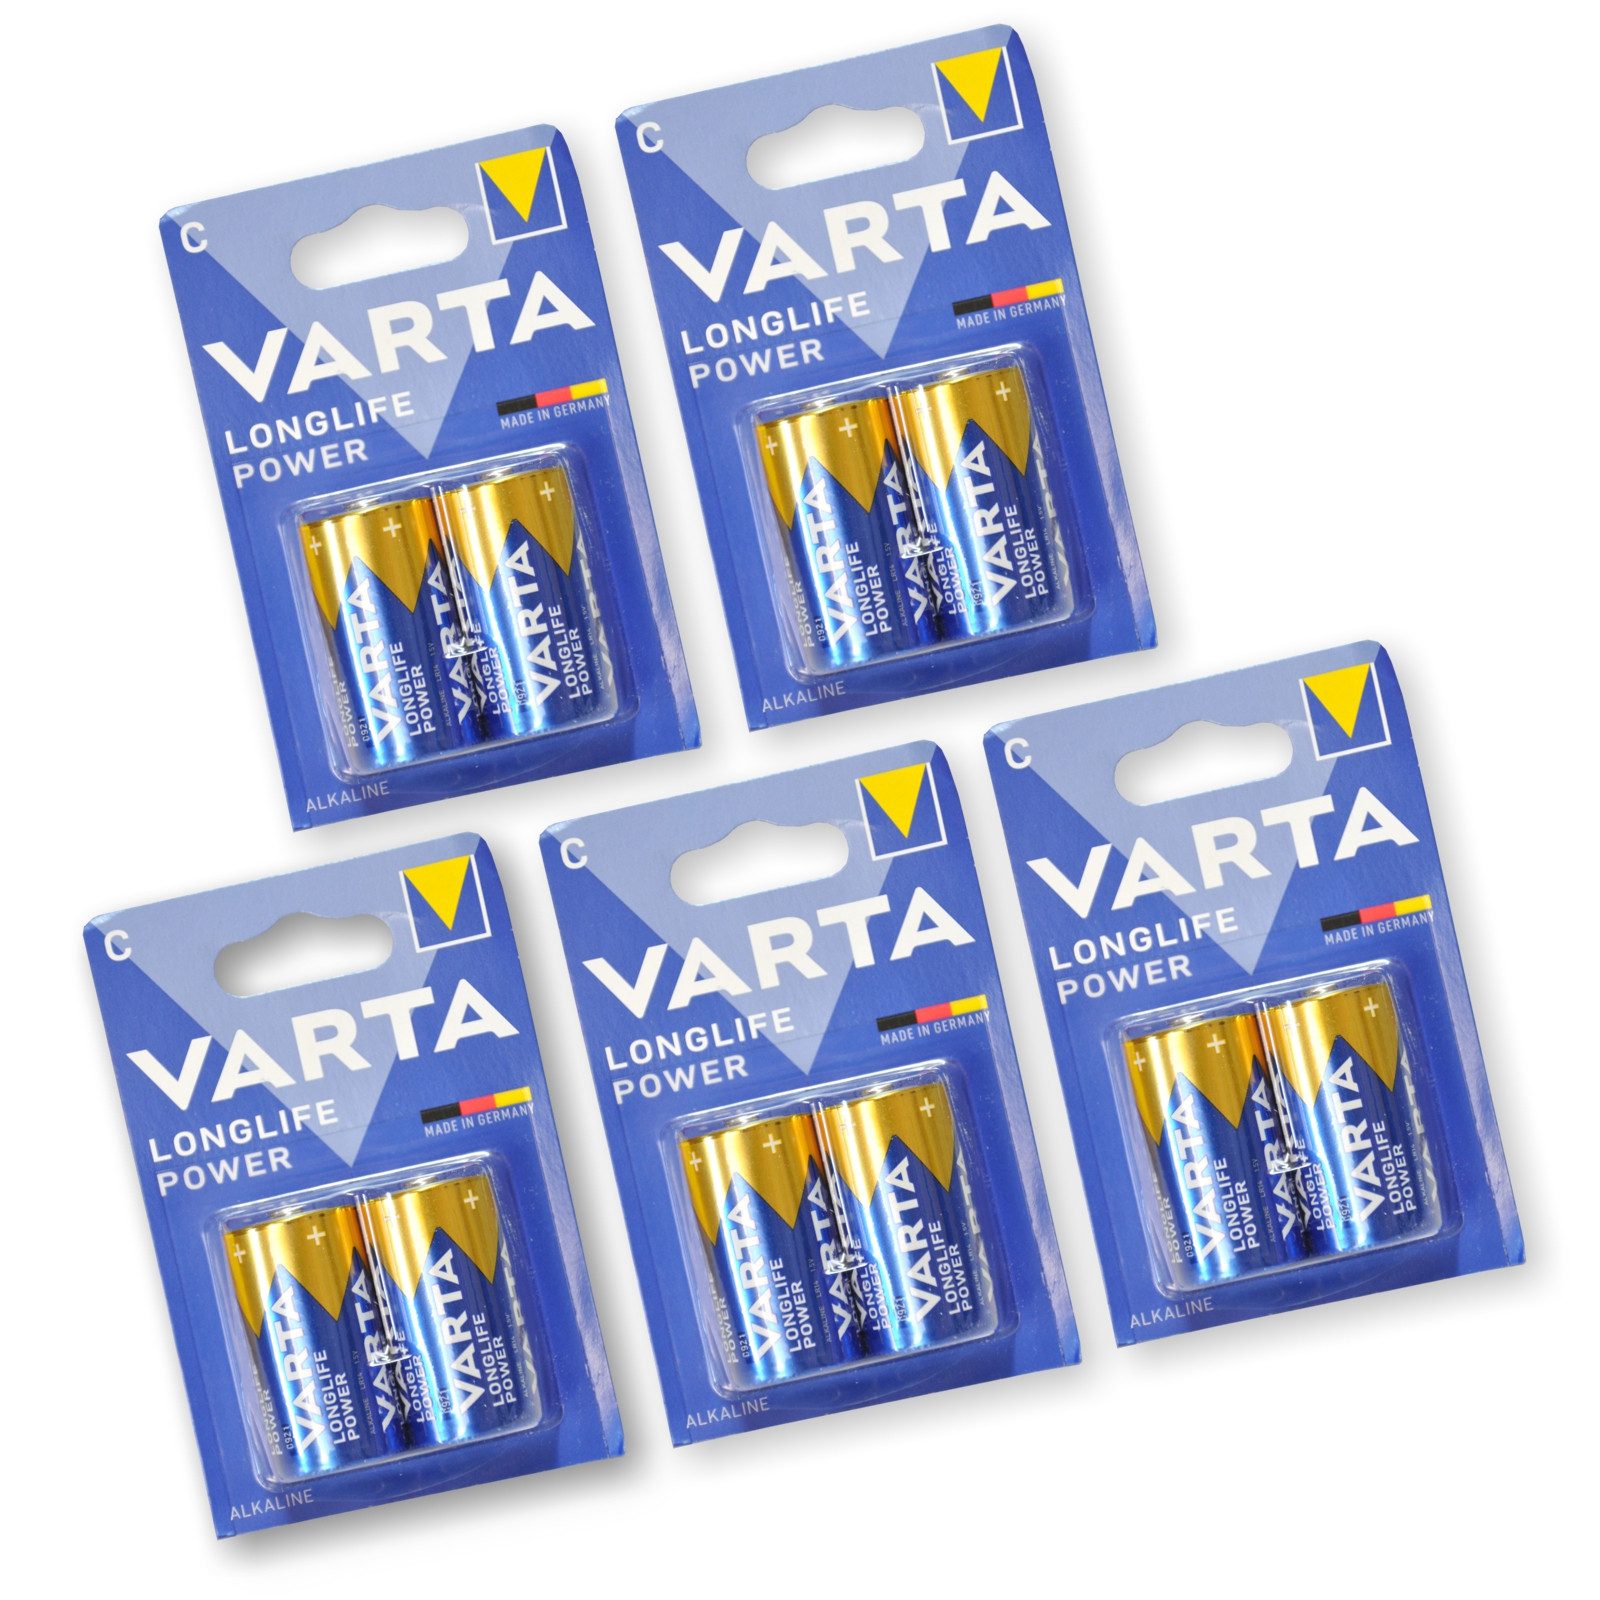 VARTA 5 Blister Varta Longlife Power 1,5V Baby C Batterie, (2 Batterien je Blister)